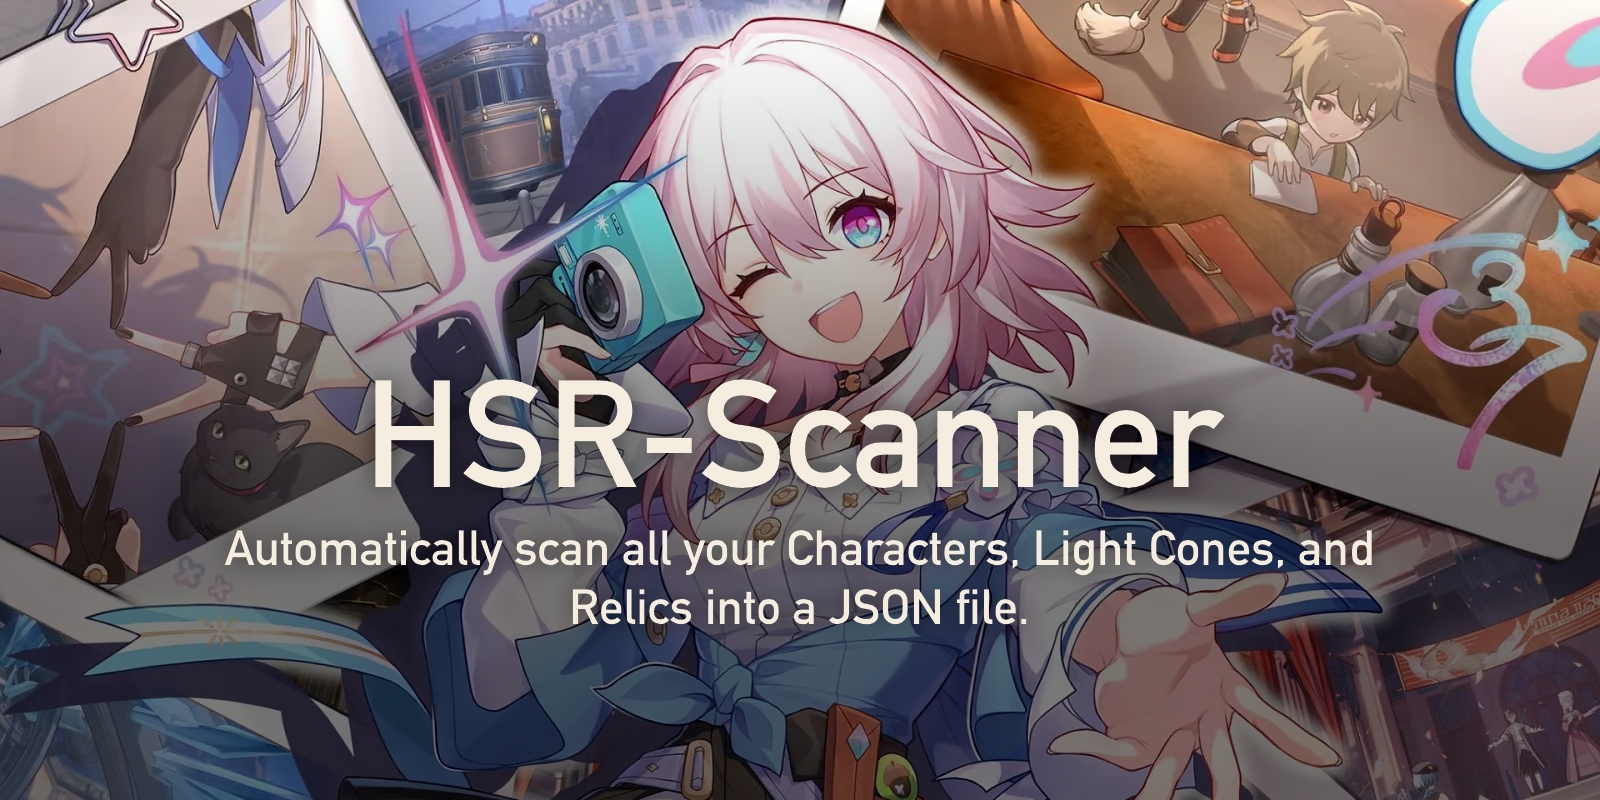 HSR-Scanner